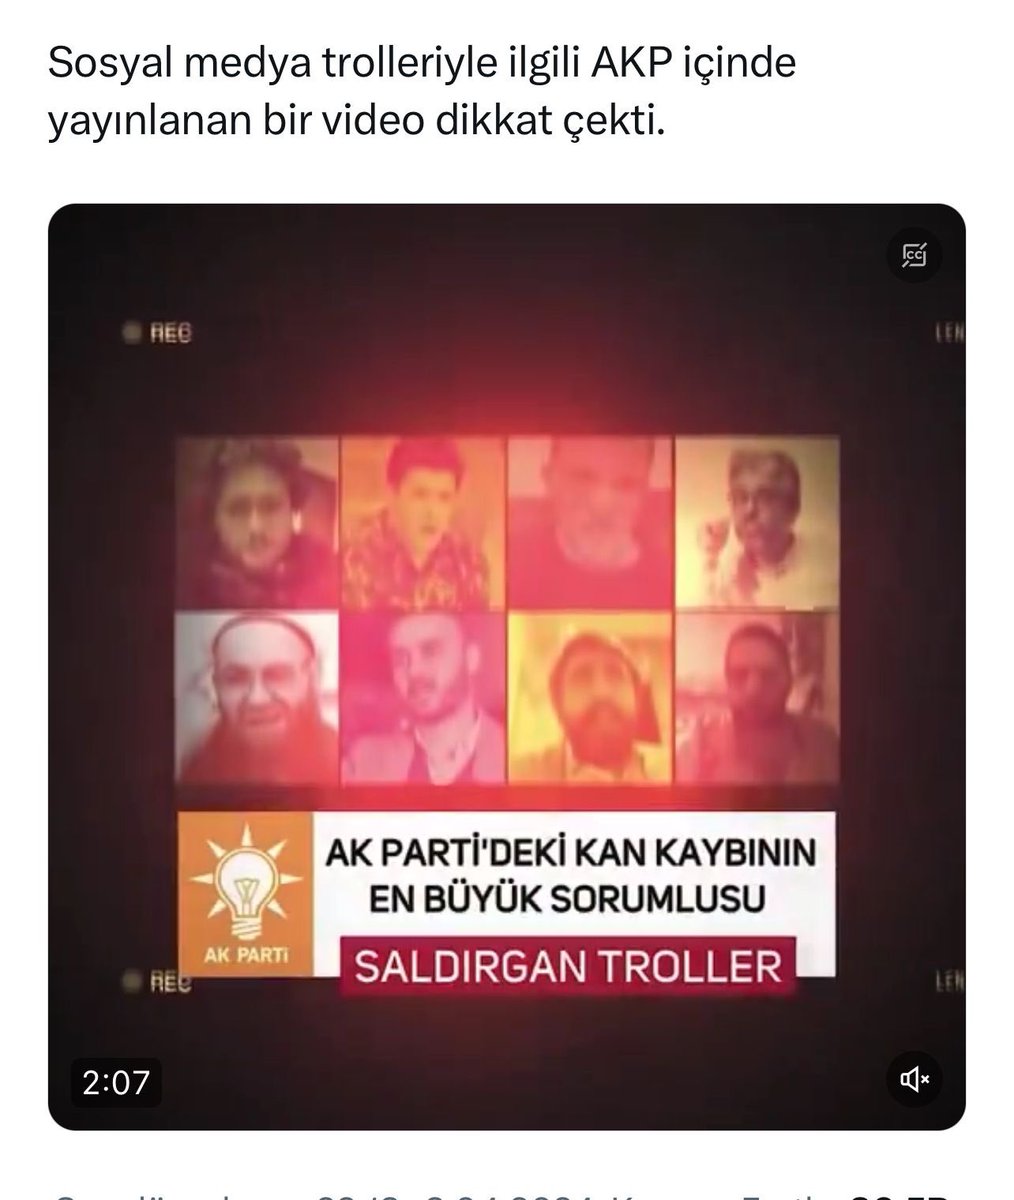 DİKKAT❗️İlişikte ekran görüntüsünü koyduğum video, kesinlikle AKP’nin içinden değil Adnan Oktar suç örgütünün dışardaki elemanları tarafından hazırlanıp piyasaya sürülmüş bir yönlendirme, yemleme harekatıdır. Amaçları Adnancılarla etkin mücadele eden bazı kişileri, muhalif…